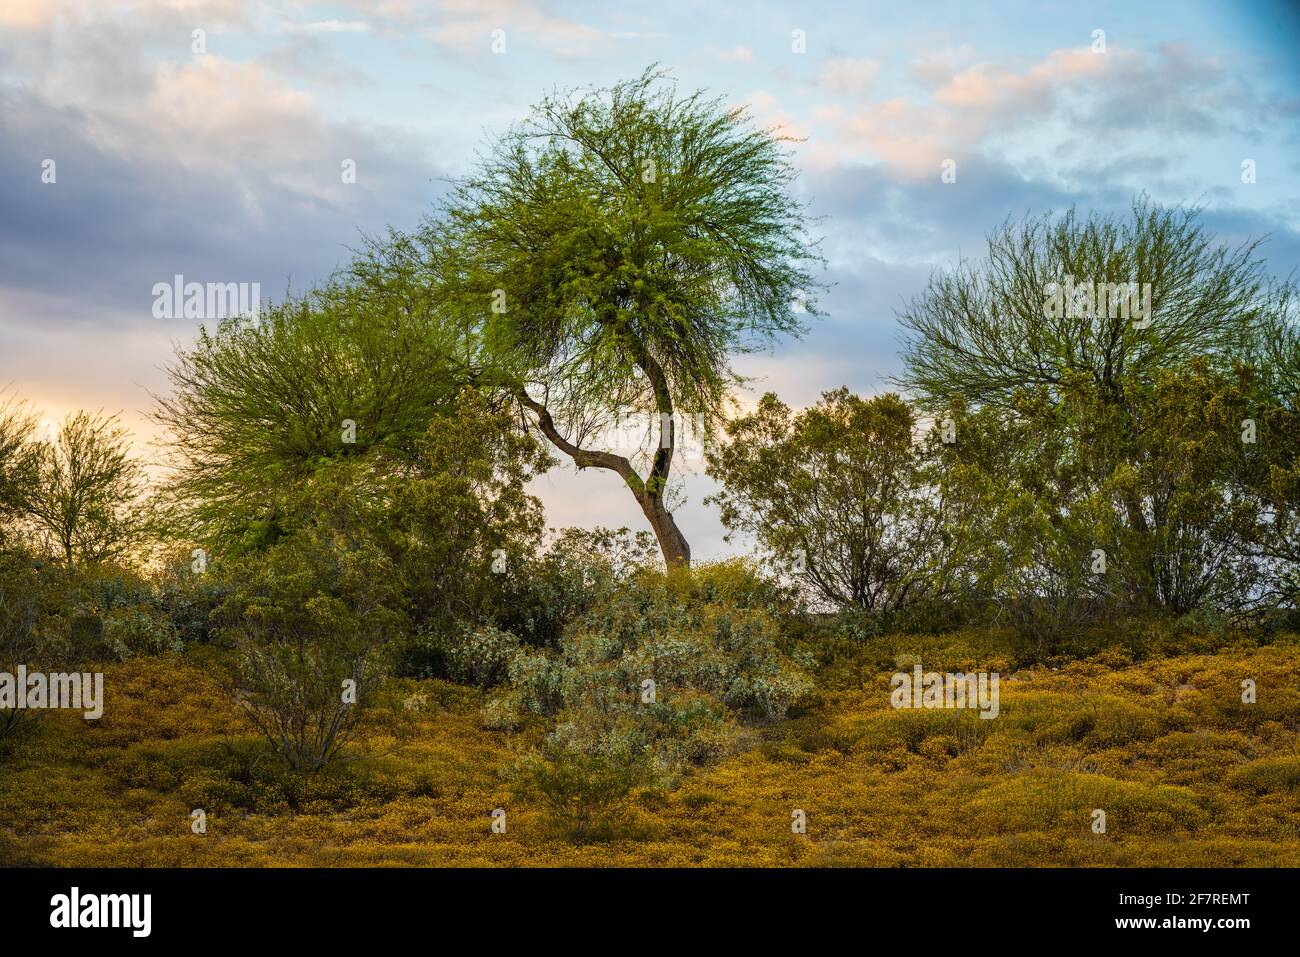 Architecture de paysage désertique dans l'un des parcours de golf de Glendale, Arizona. Paysages désertiques avec plantes désertiques. Banque D'Images